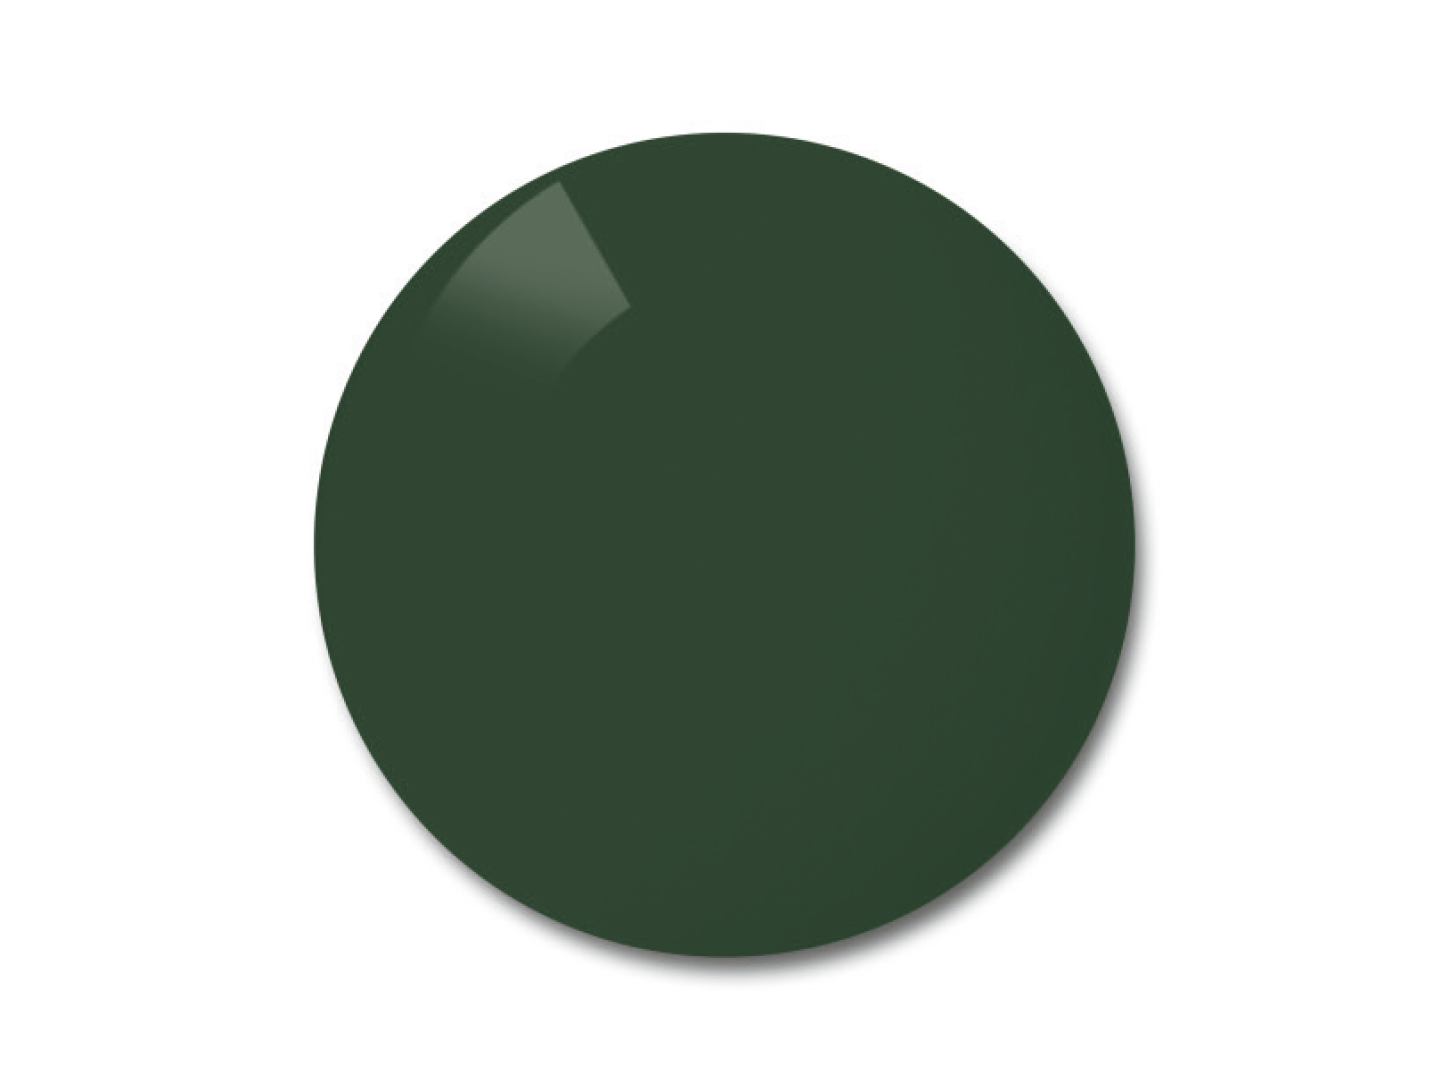 Wzór koloru dla szaro-zielonych (pioneer) soczewek polaryzacyjnych.